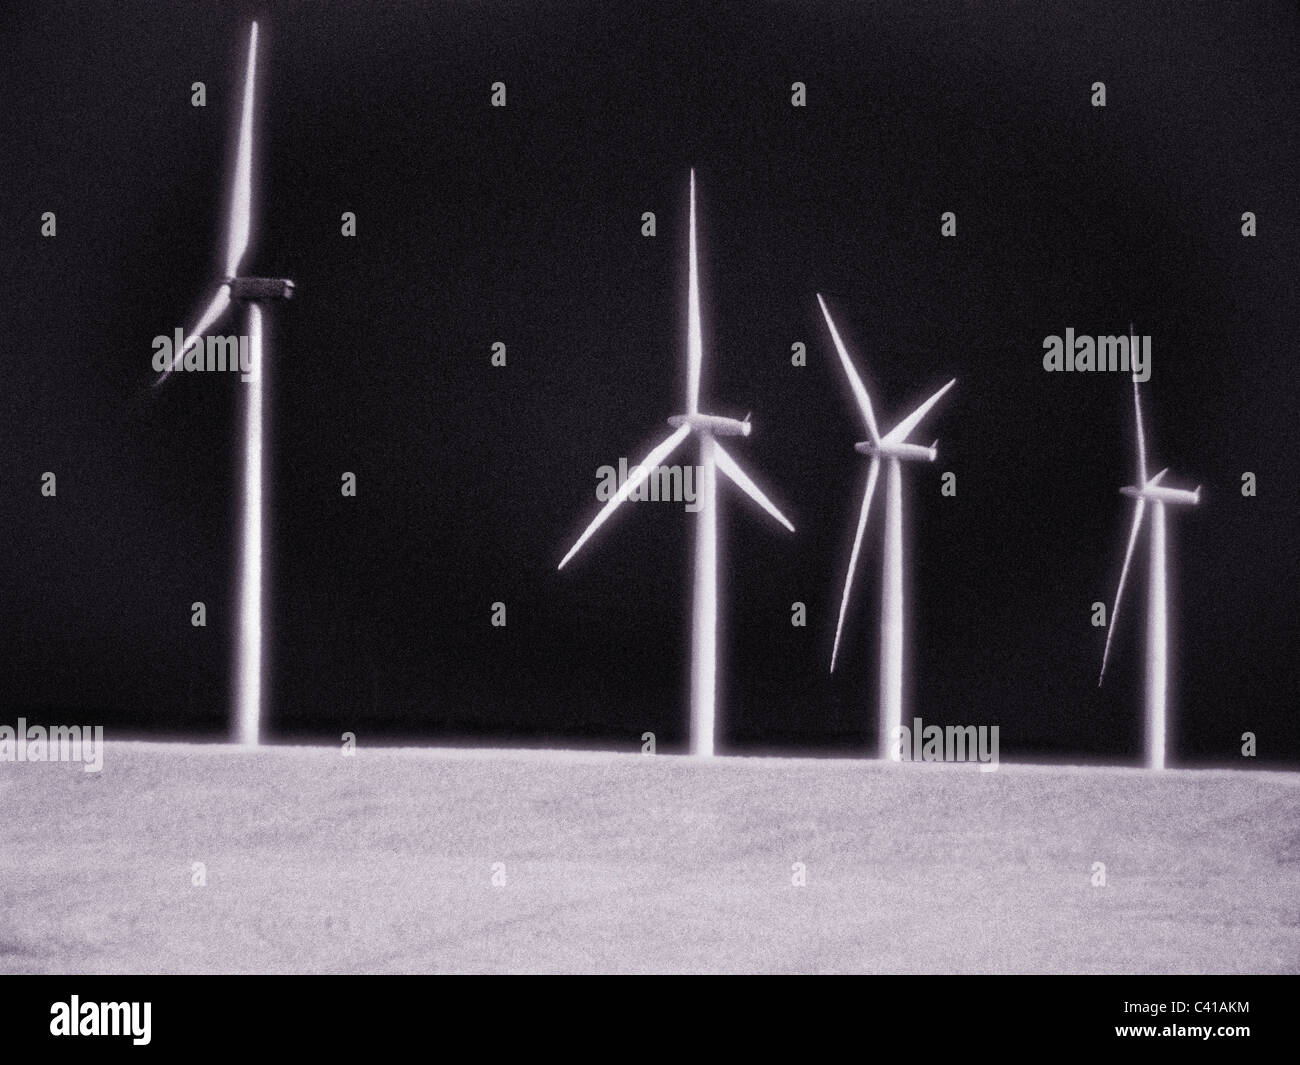 Generazione di elettricità mulini a vento Wasco, Oregon fotografata a raggi infrarossi Foto Stock